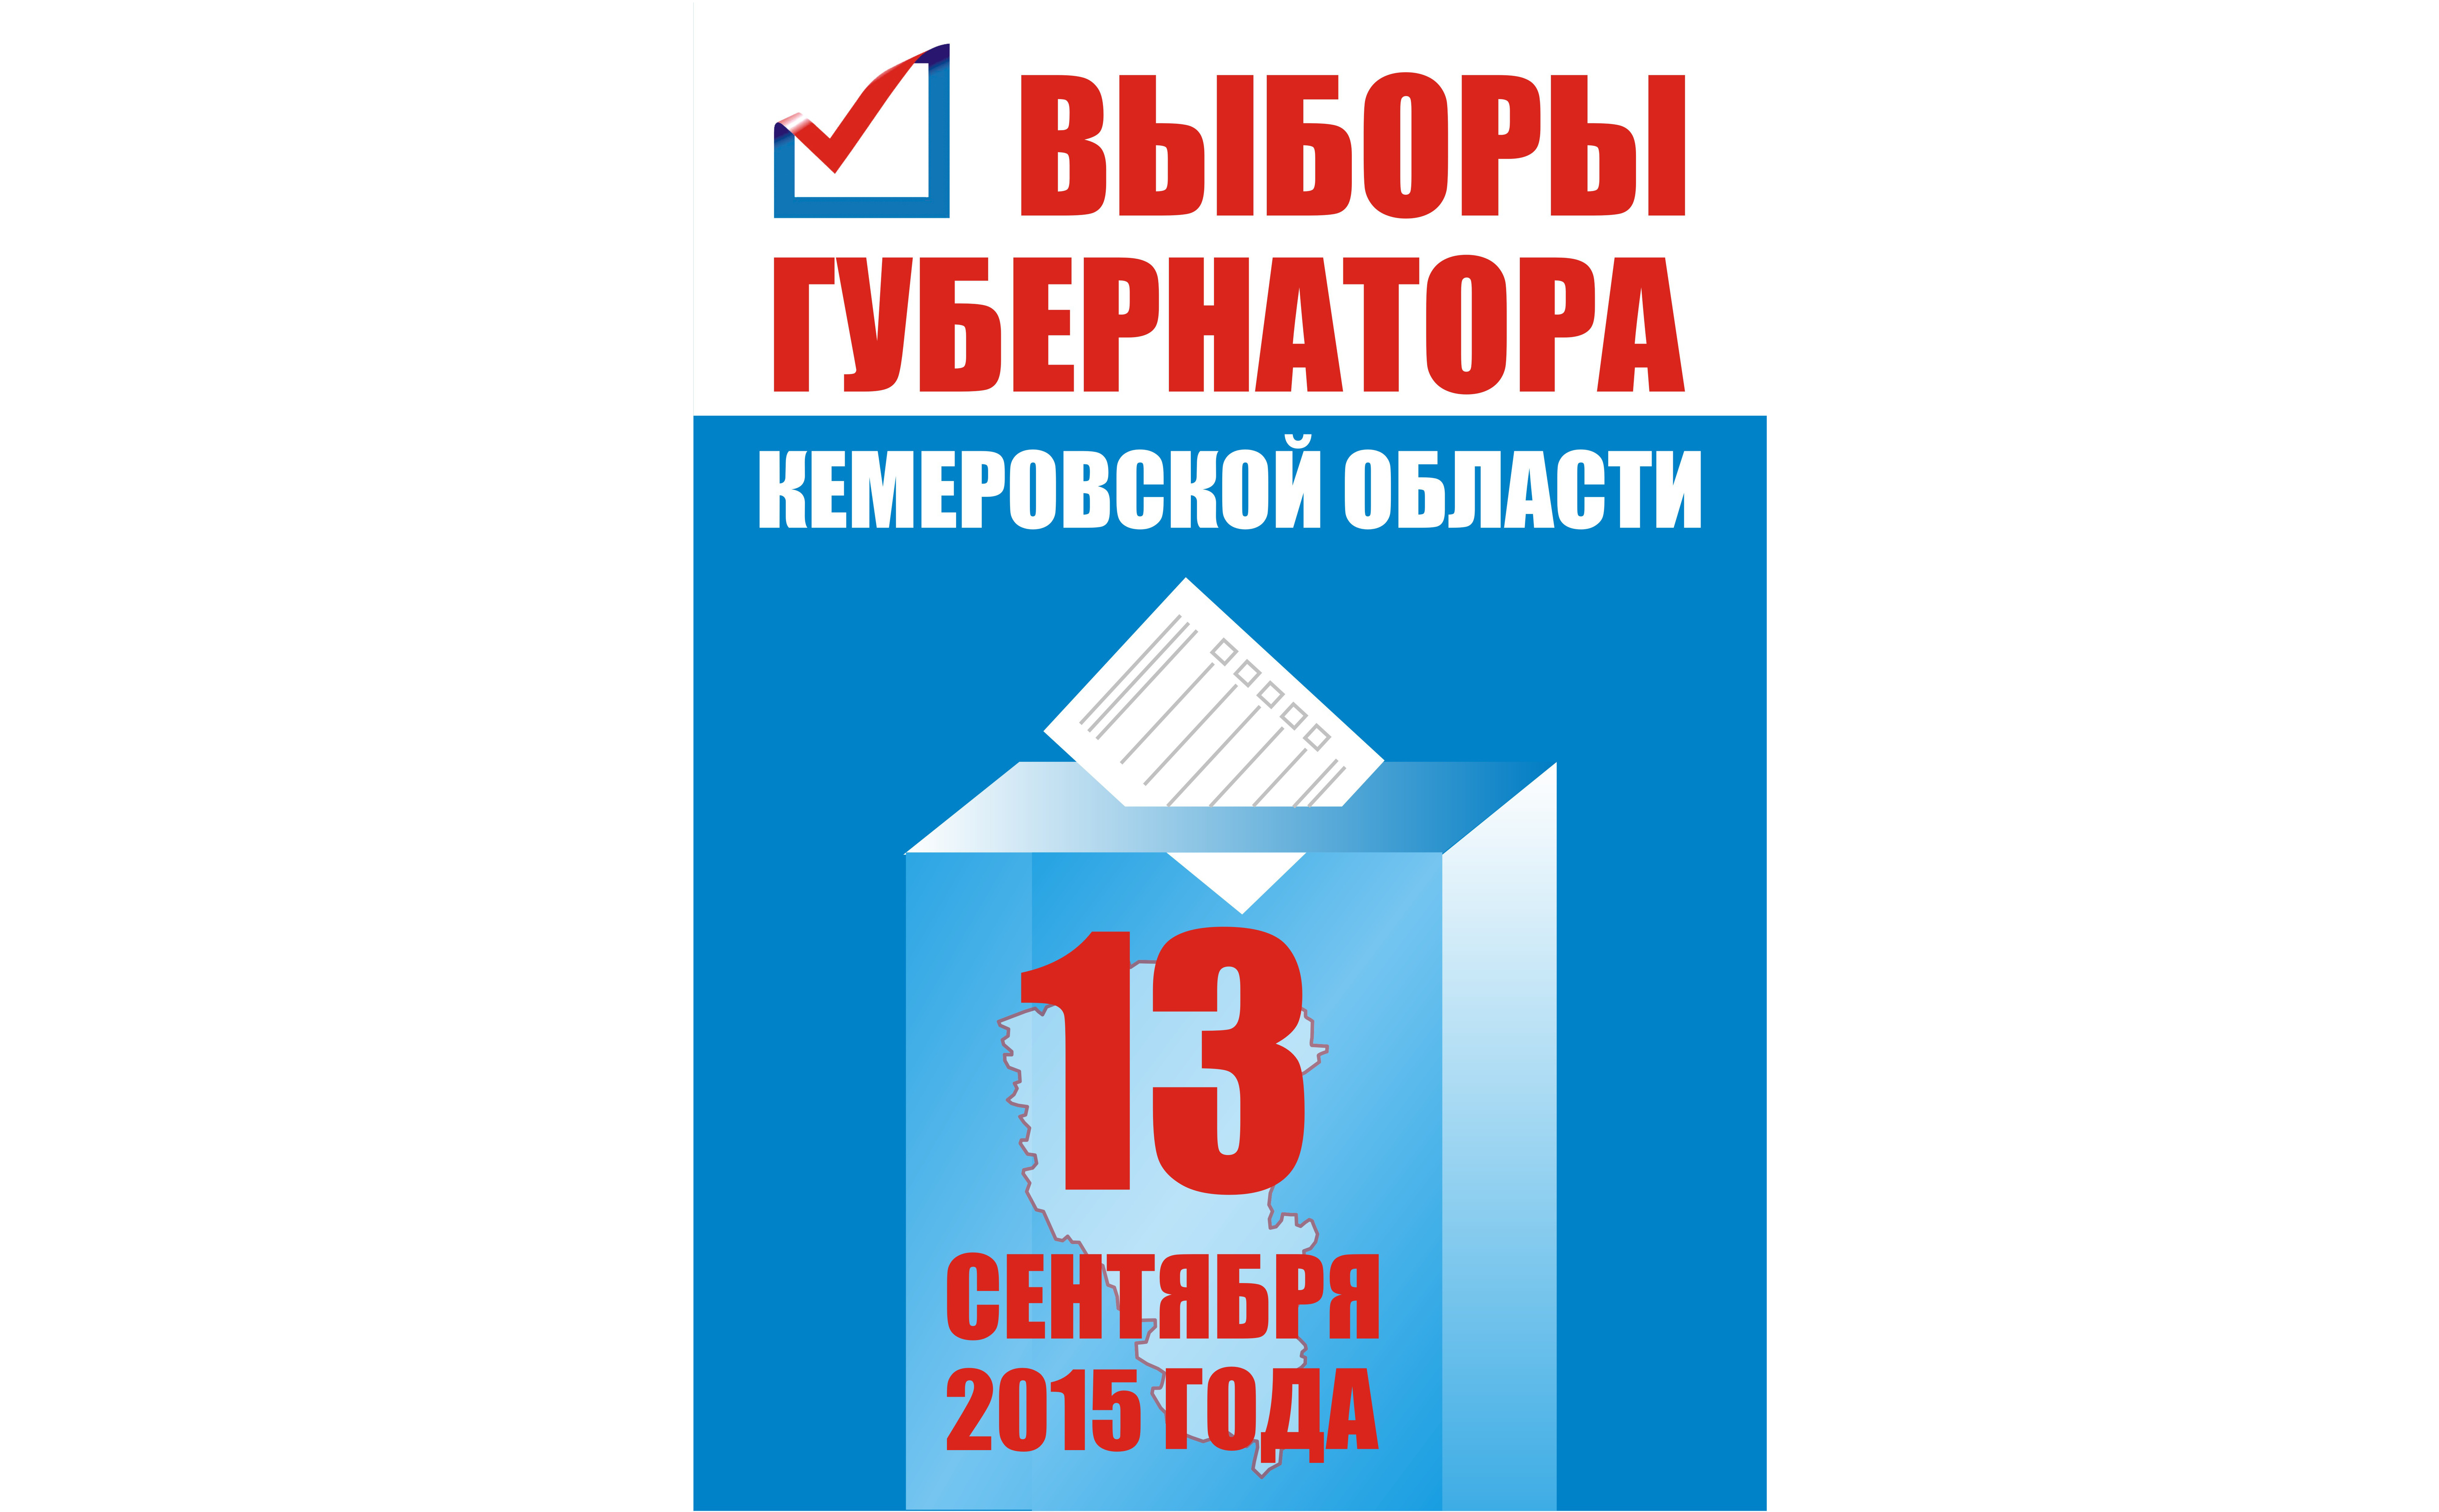 Выборы Губернатора Кемеровской области